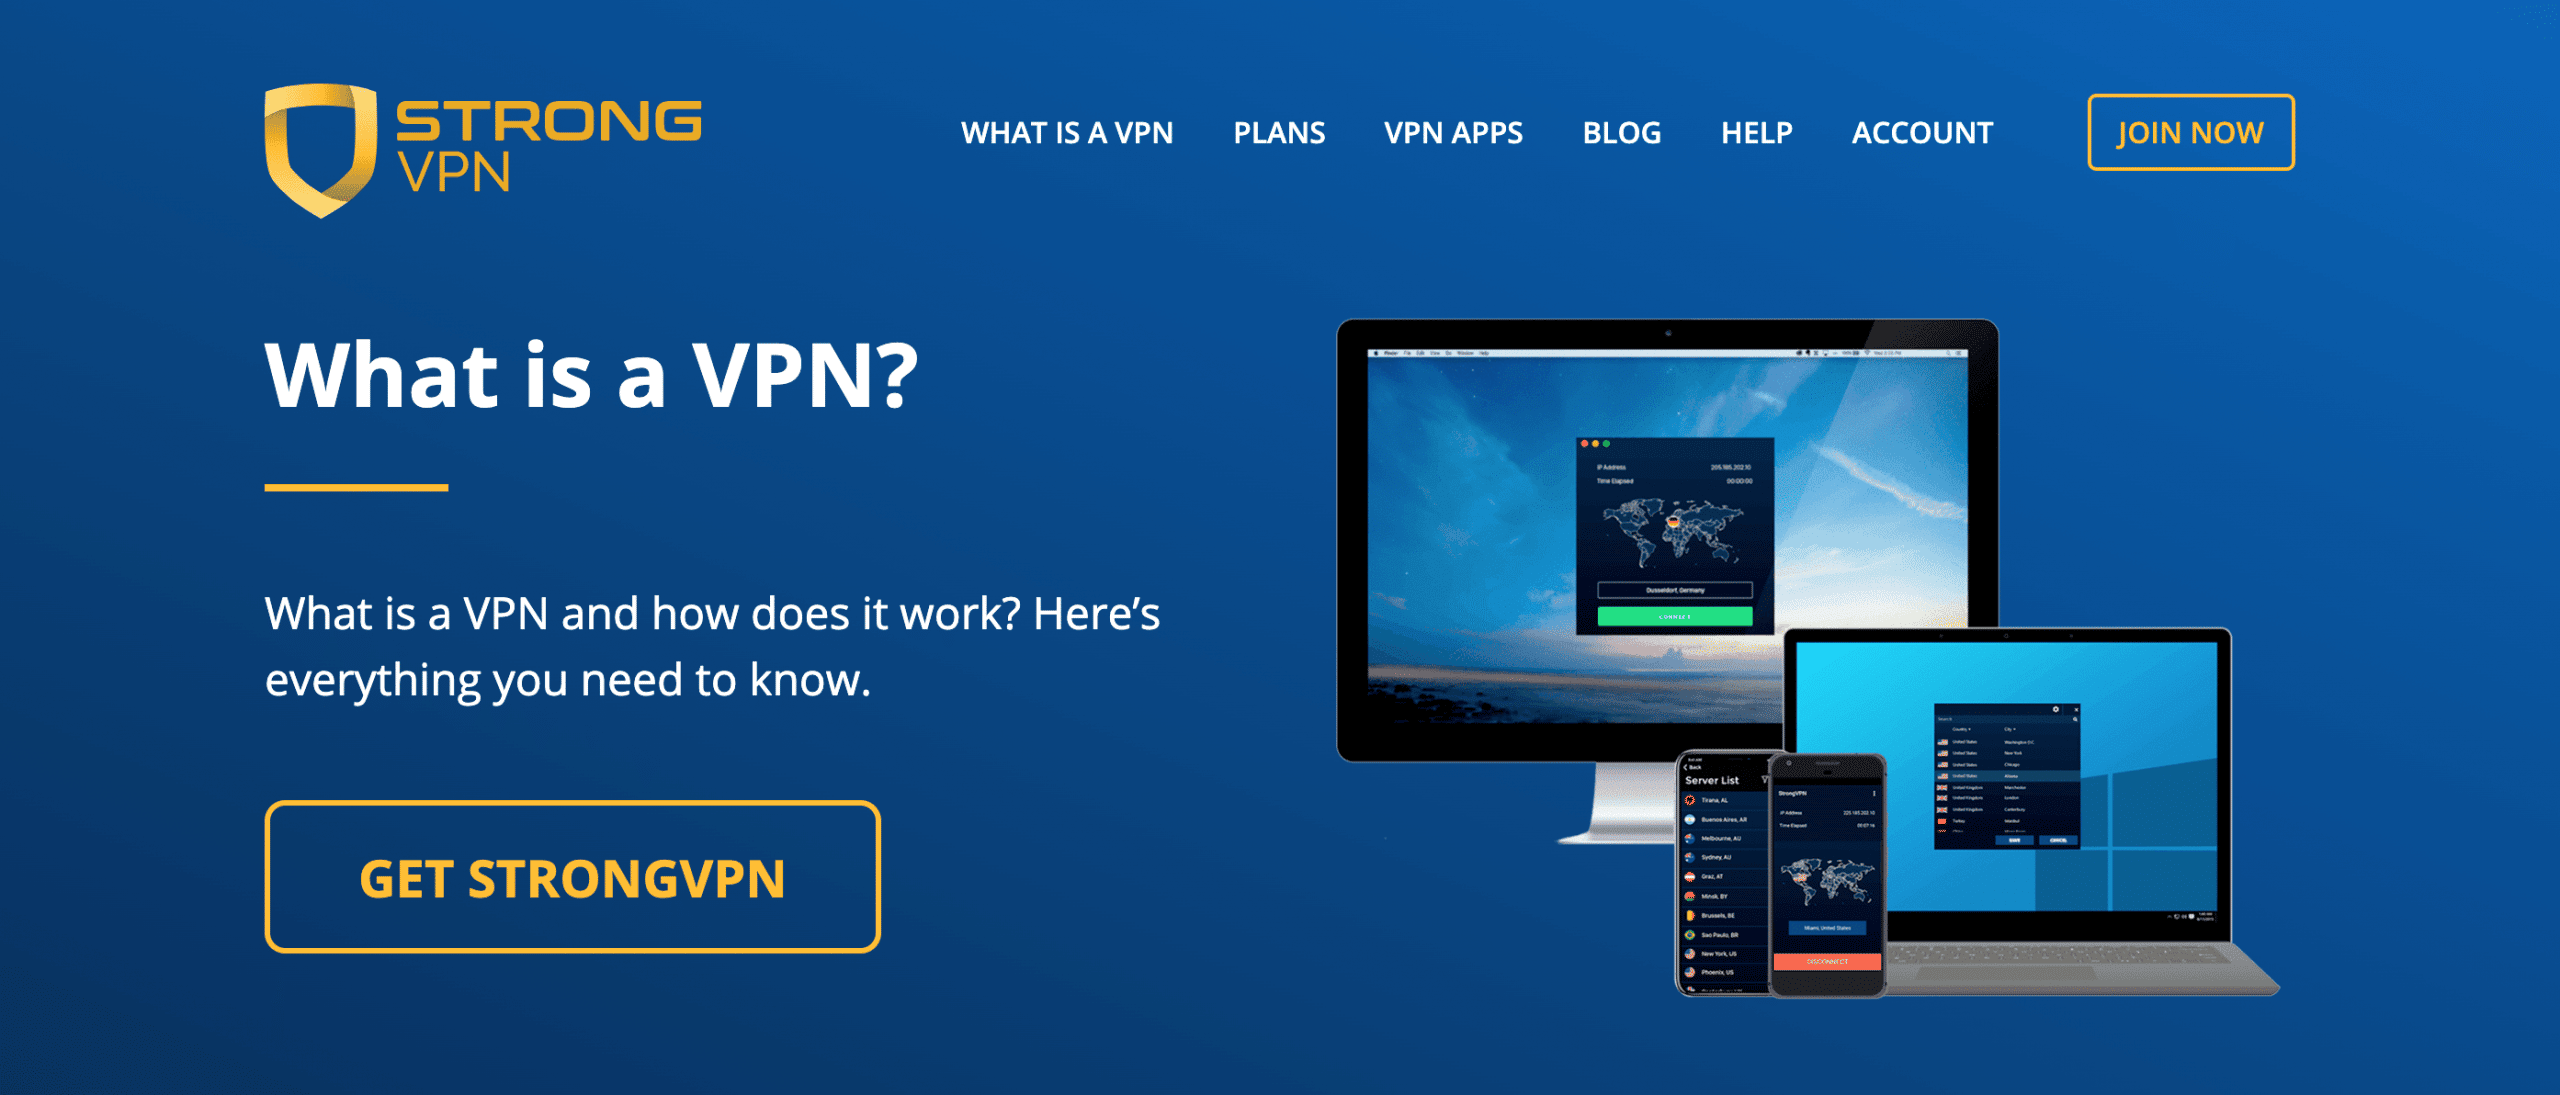 I migliori VPN da scegliere: StrongVPN